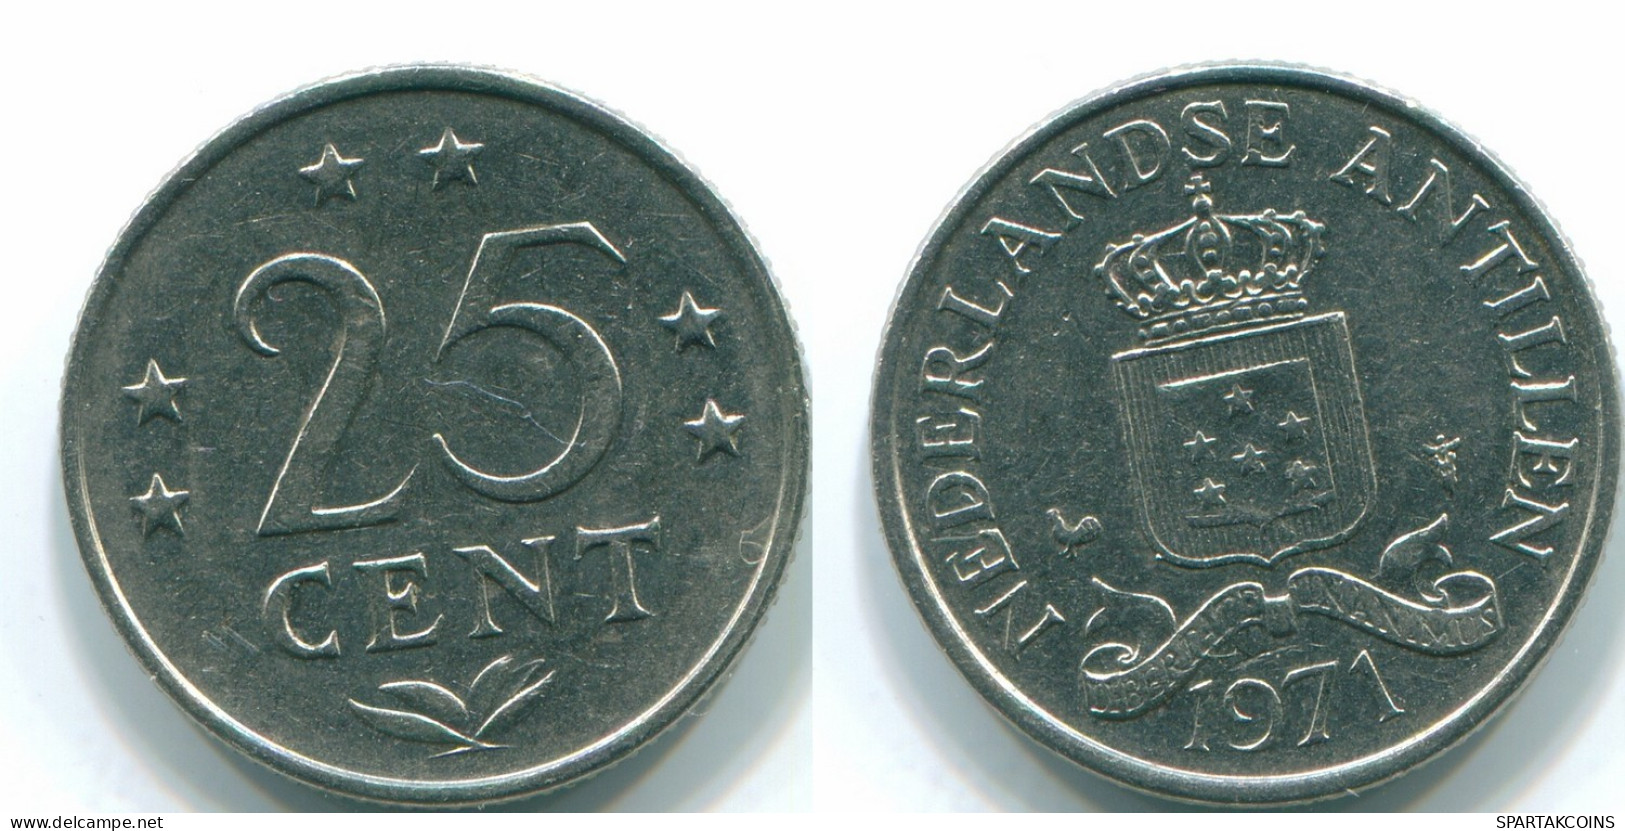 25 CENTS 1971 NIEDERLÄNDISCHE ANTILLEN Nickel Koloniale Münze #S11525.D.A - Niederländische Antillen